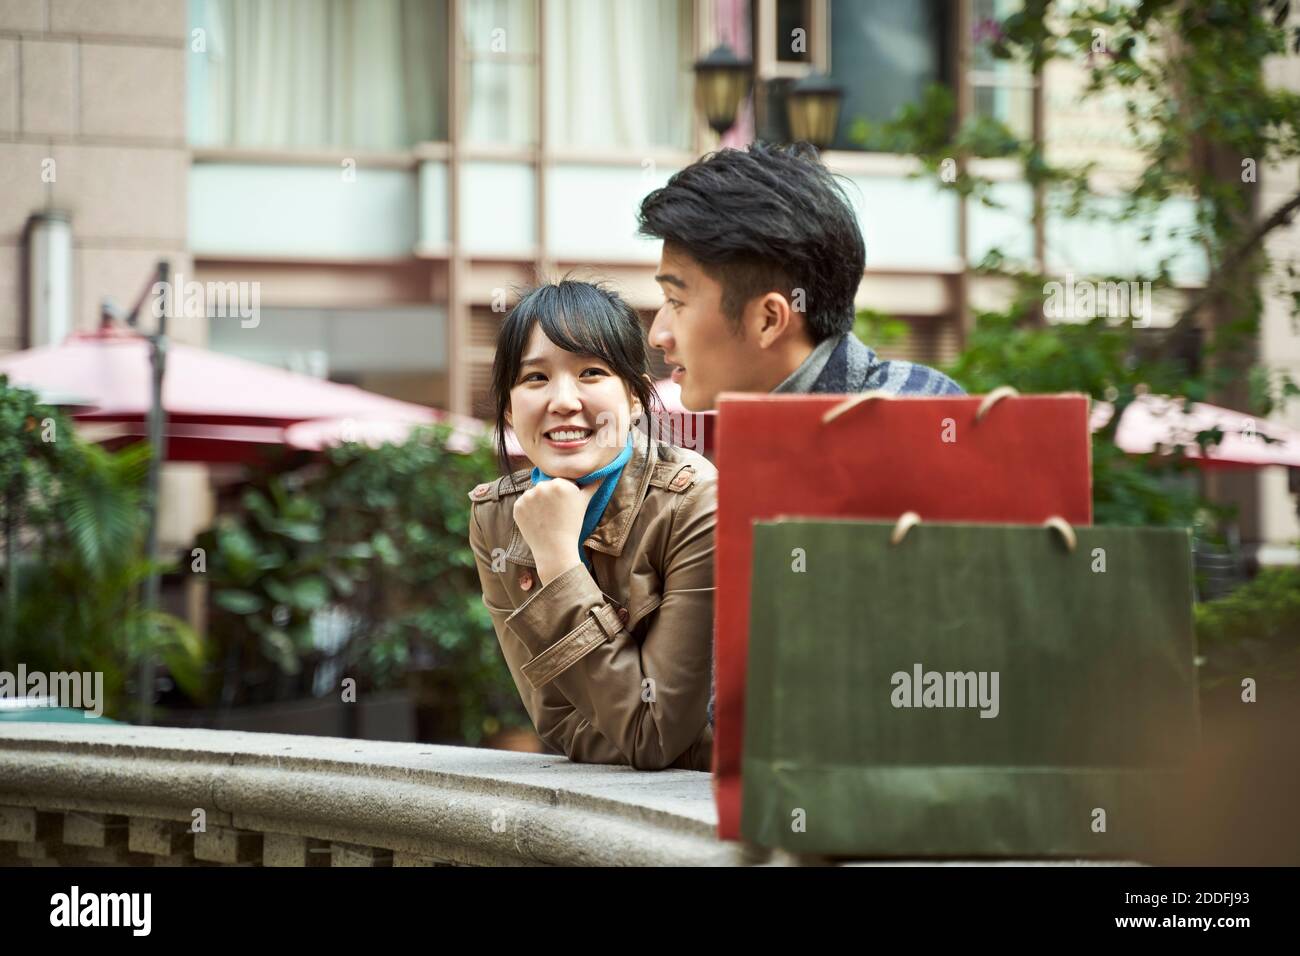 un jeune couple asiatique heureux se détendant pour bavarder à l'extérieur Banque D'Images